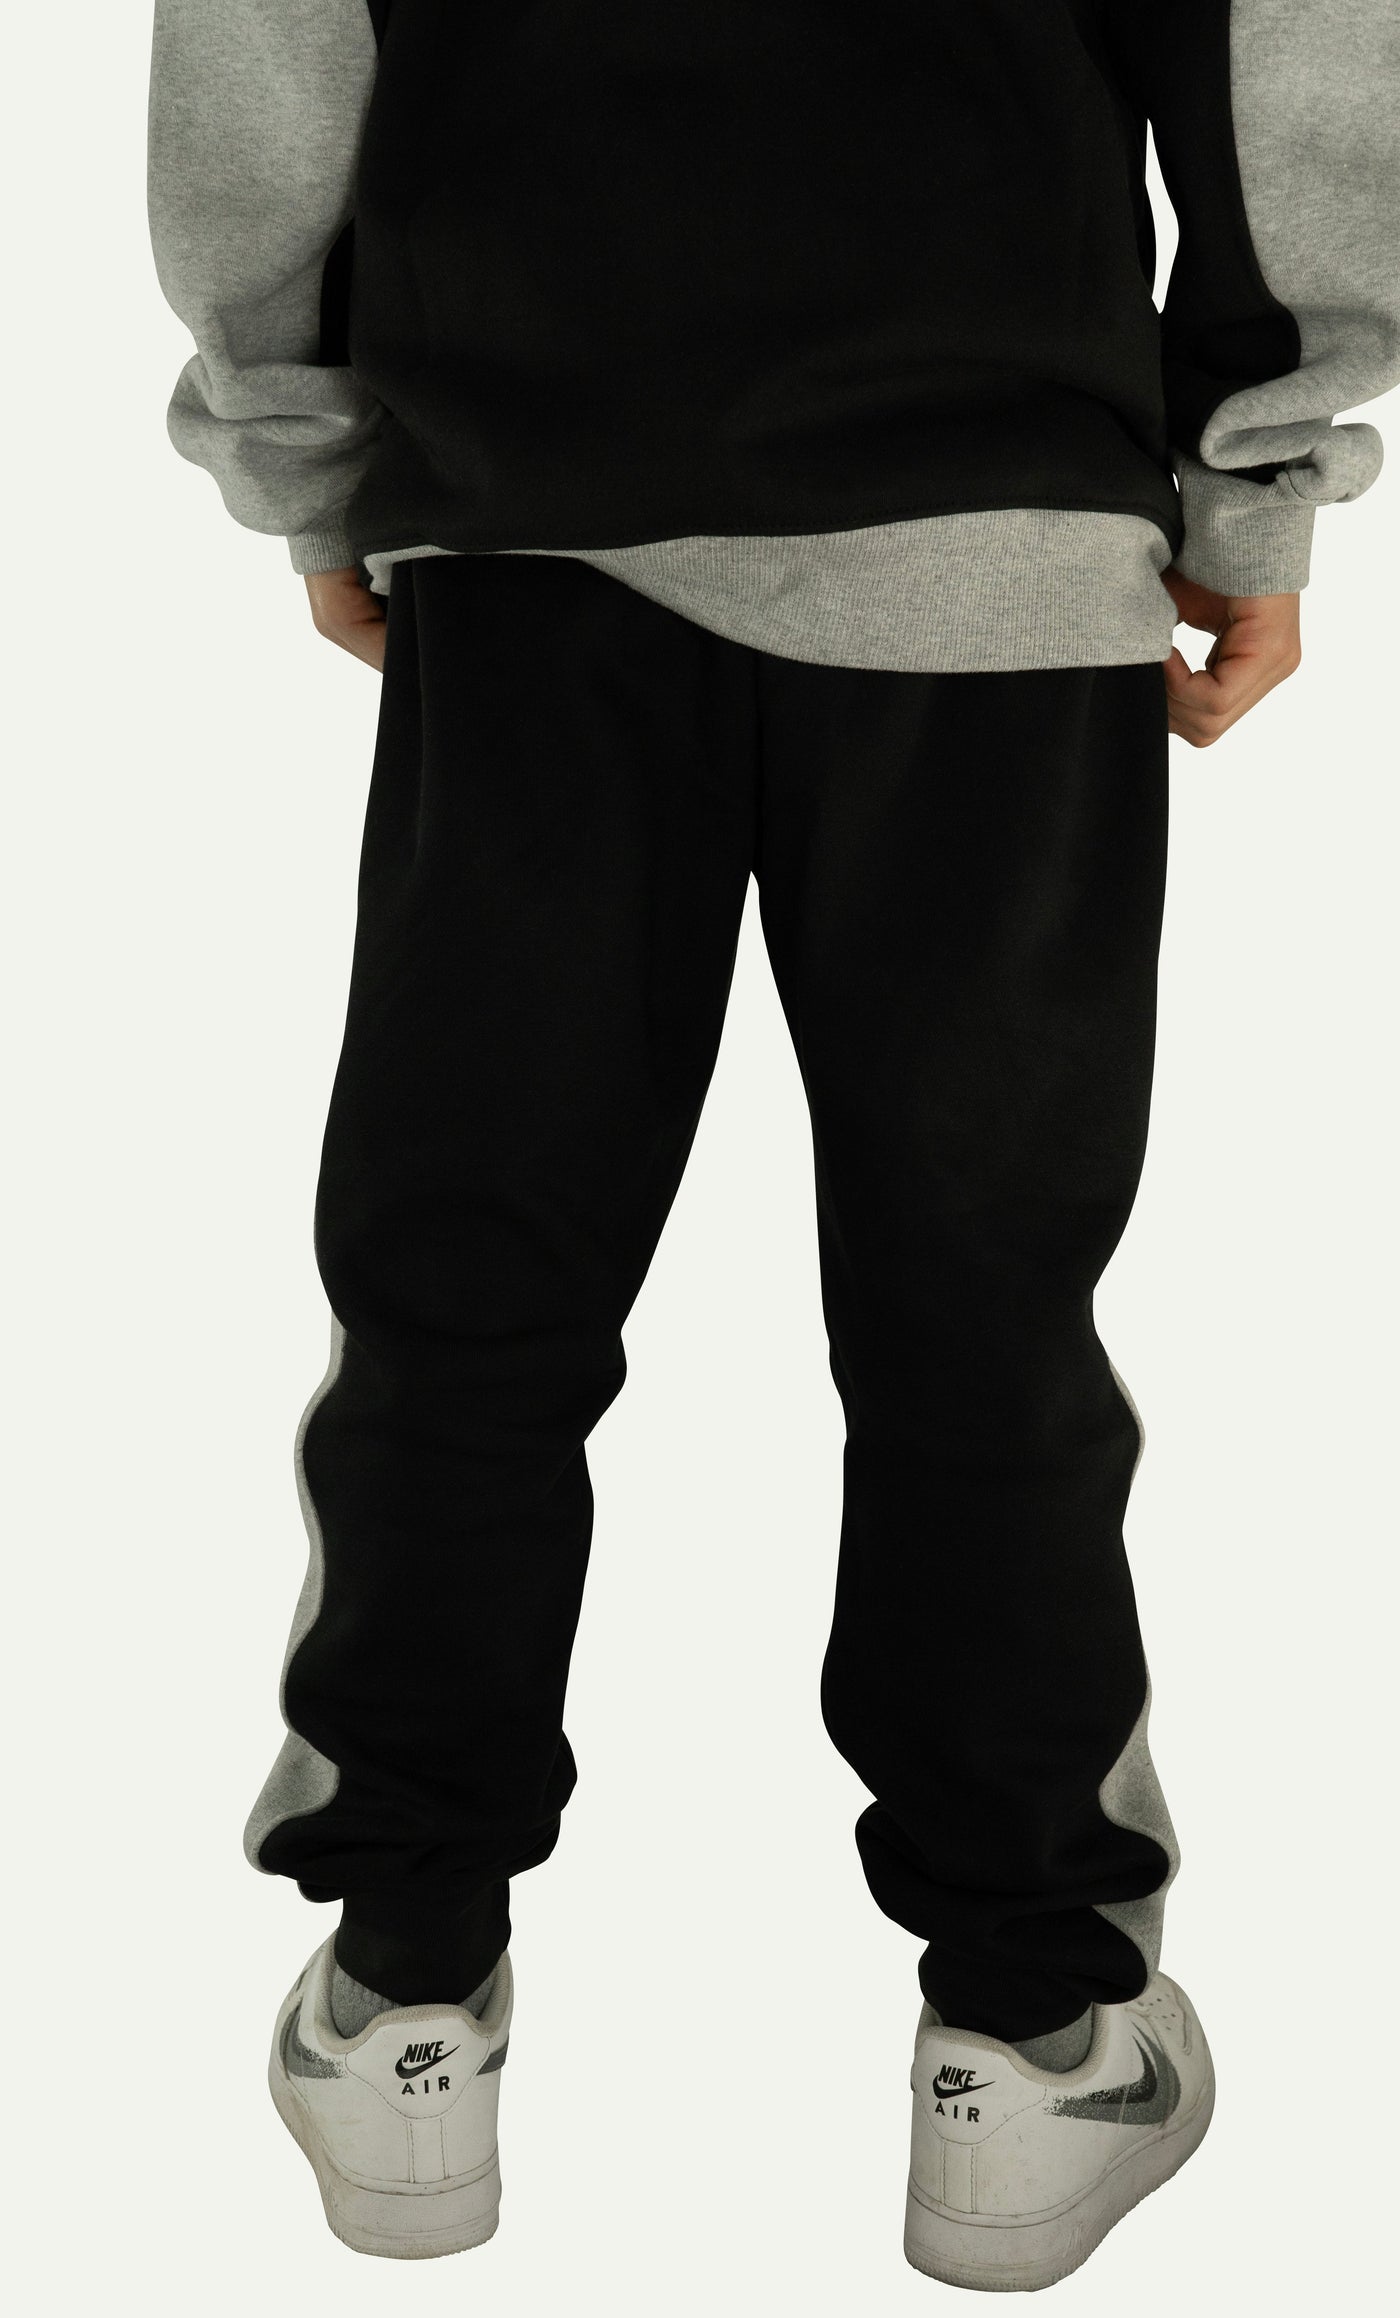 Qualle Jogginganzug "Streetwear Respekt" unisex (Kinder, Frauen und Herren) - grau schwarz